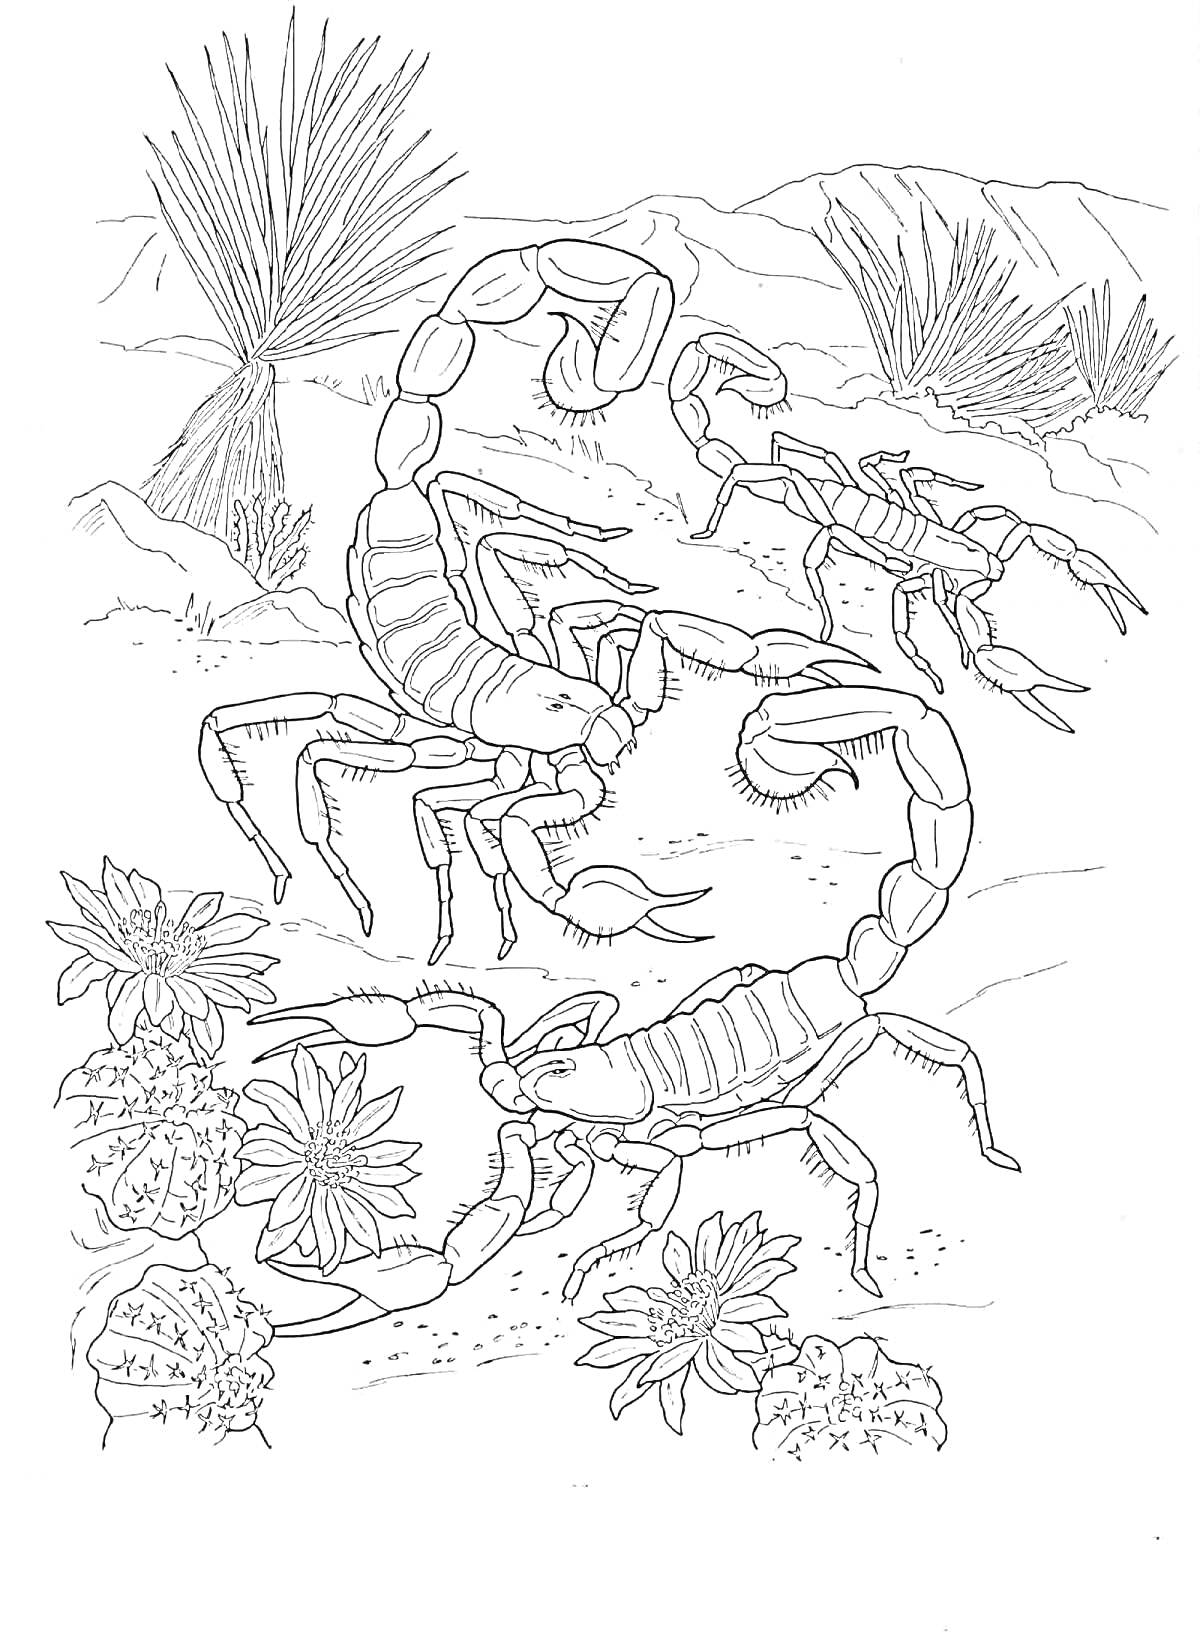 Раскраска Два скорпиона среди пустынных растений, включая кактусы и цветы, на фоне гор и кустарников.